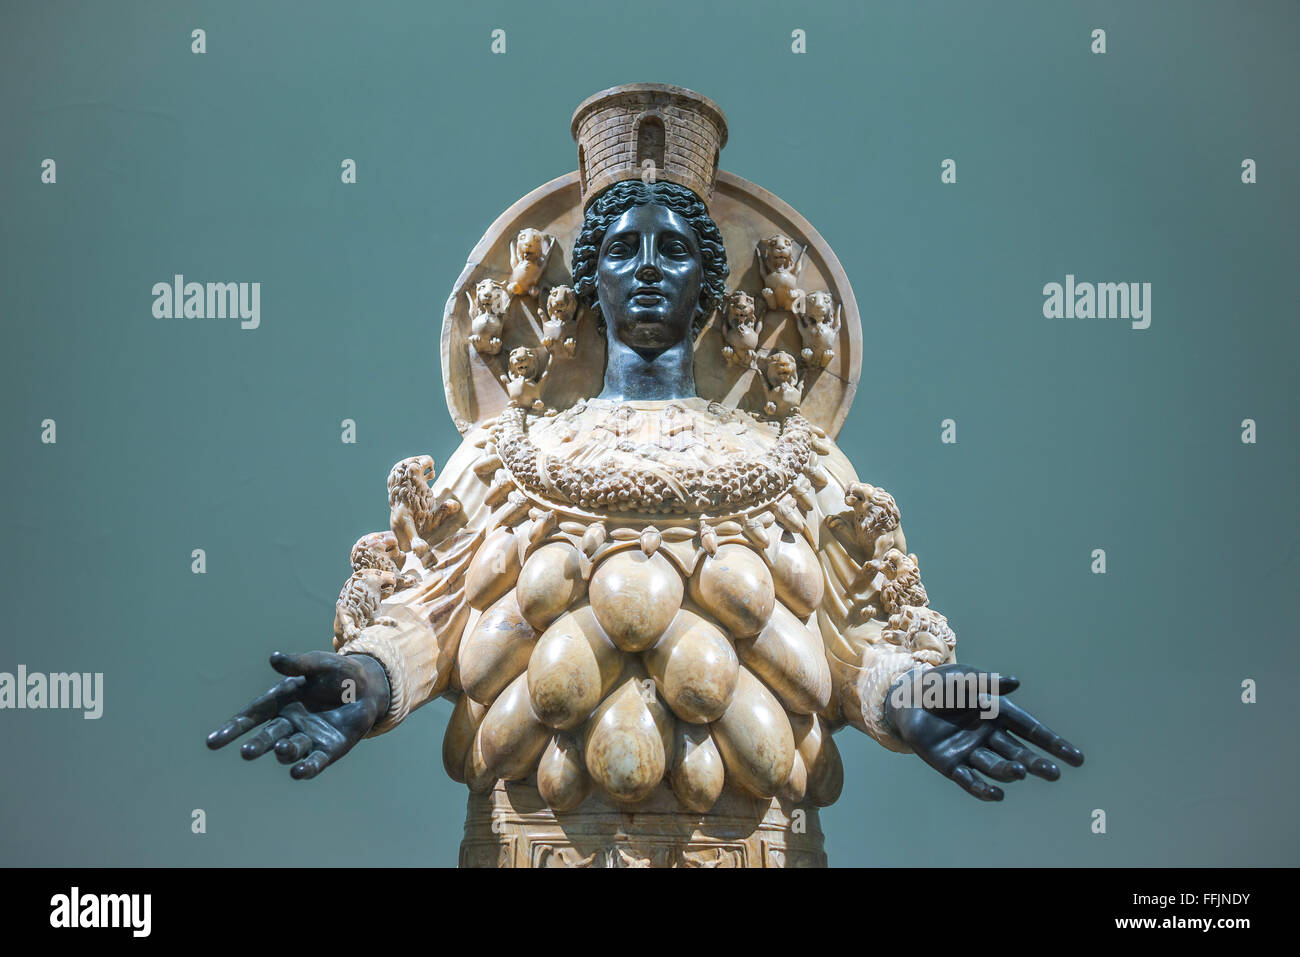 Statua di Artemide Museo archeologico di Napoli, vista della statua di Artemide di Efeso (II secolo d.C.), Museo Archeologico Nazionale di Napoli, Italia. Foto Stock